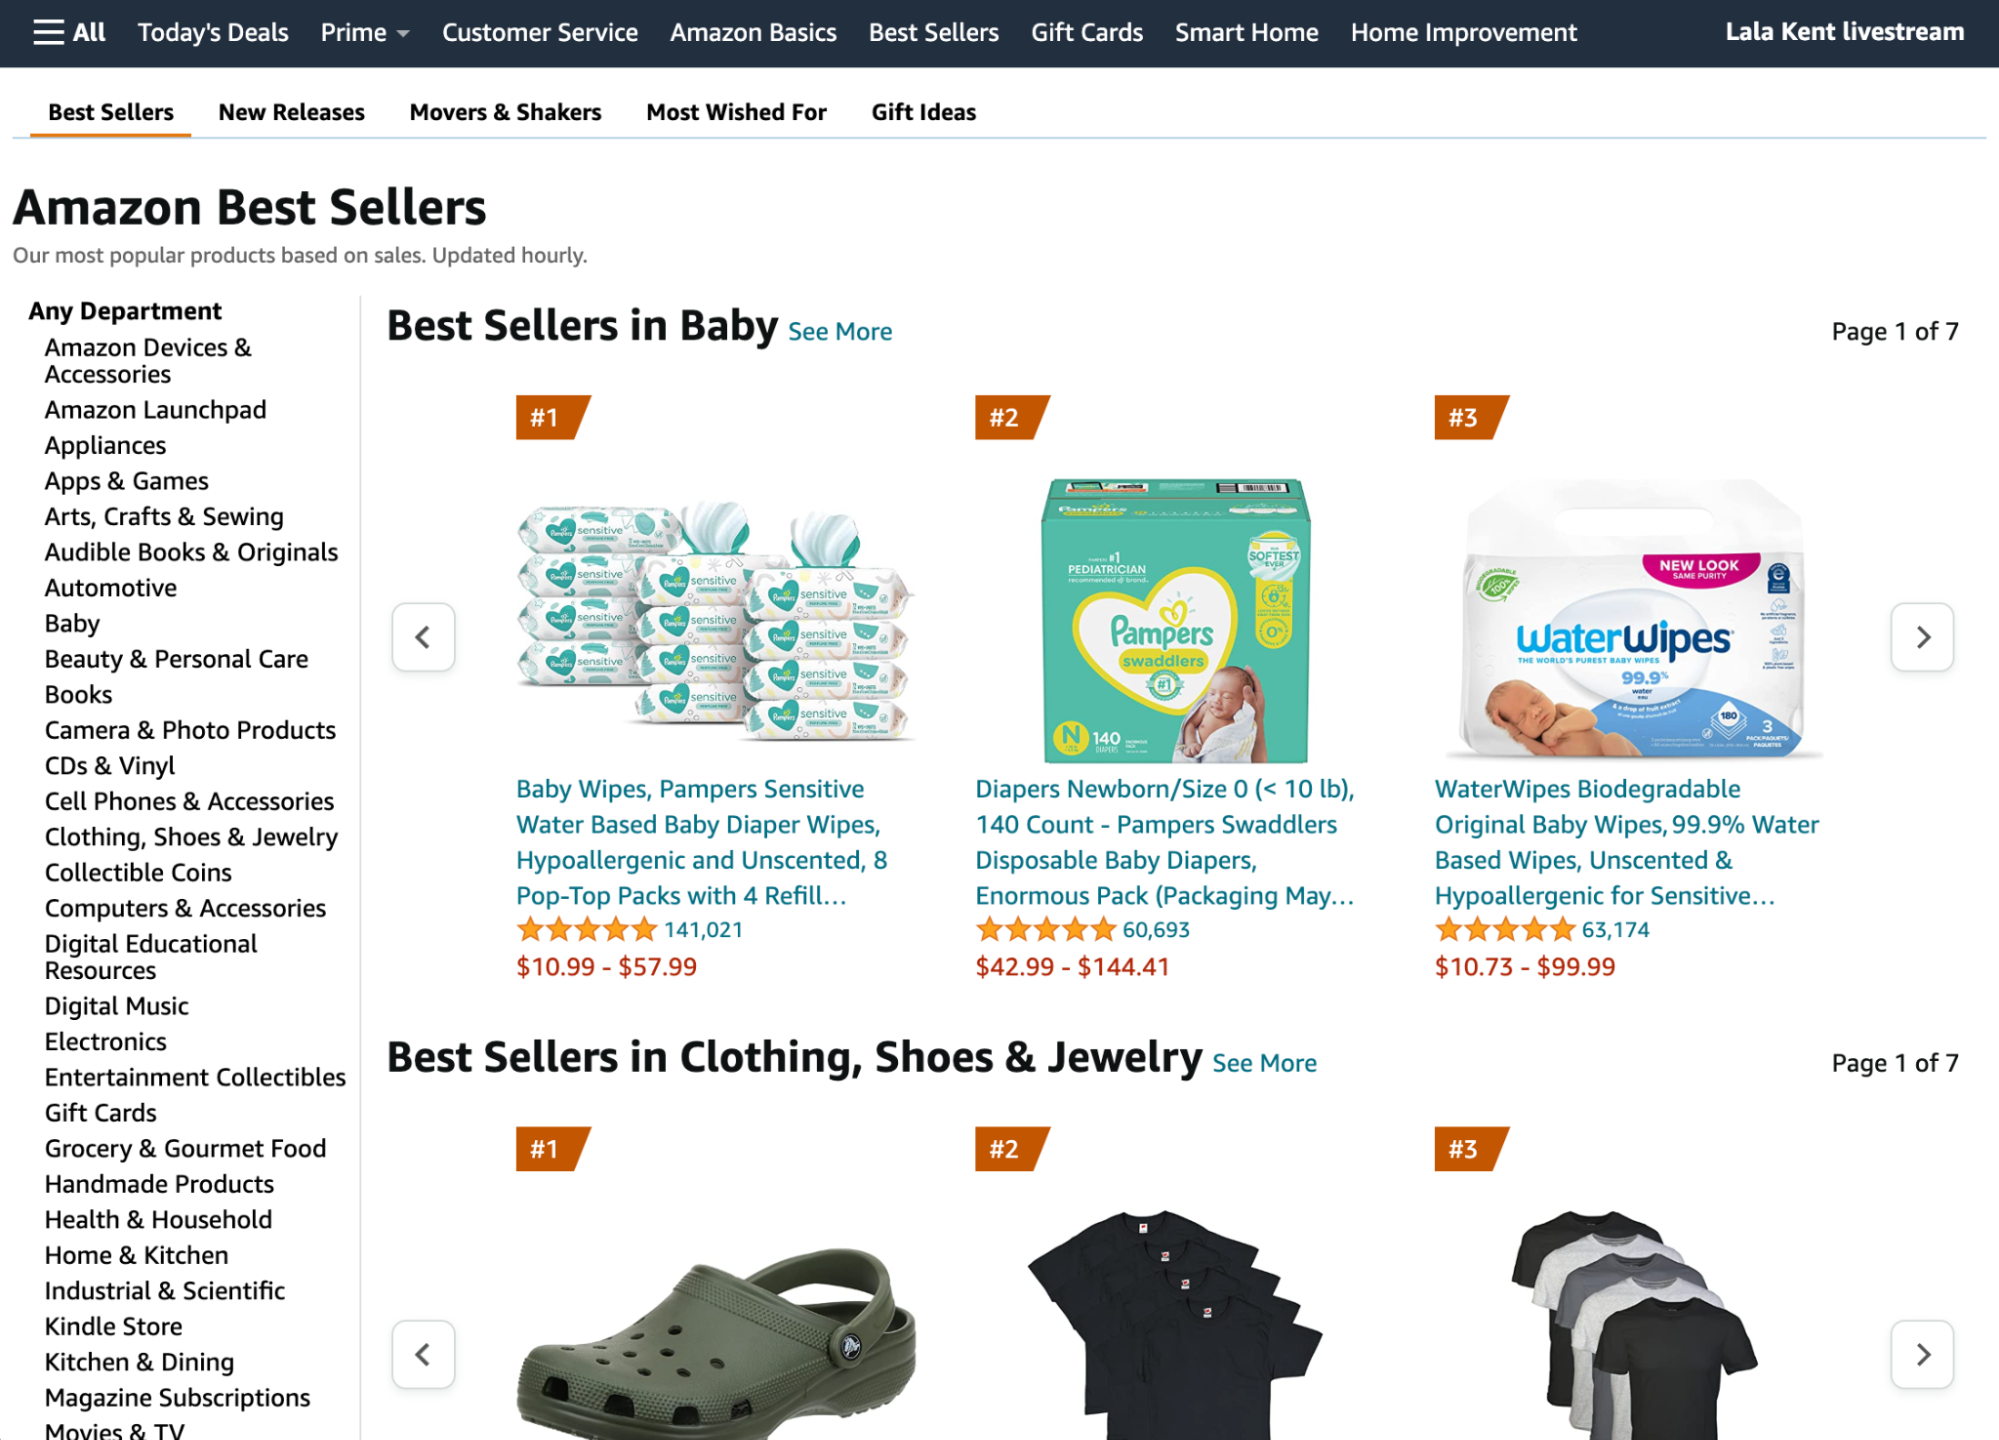 Amazon热销榜展示婴儿用品和服饰等产品